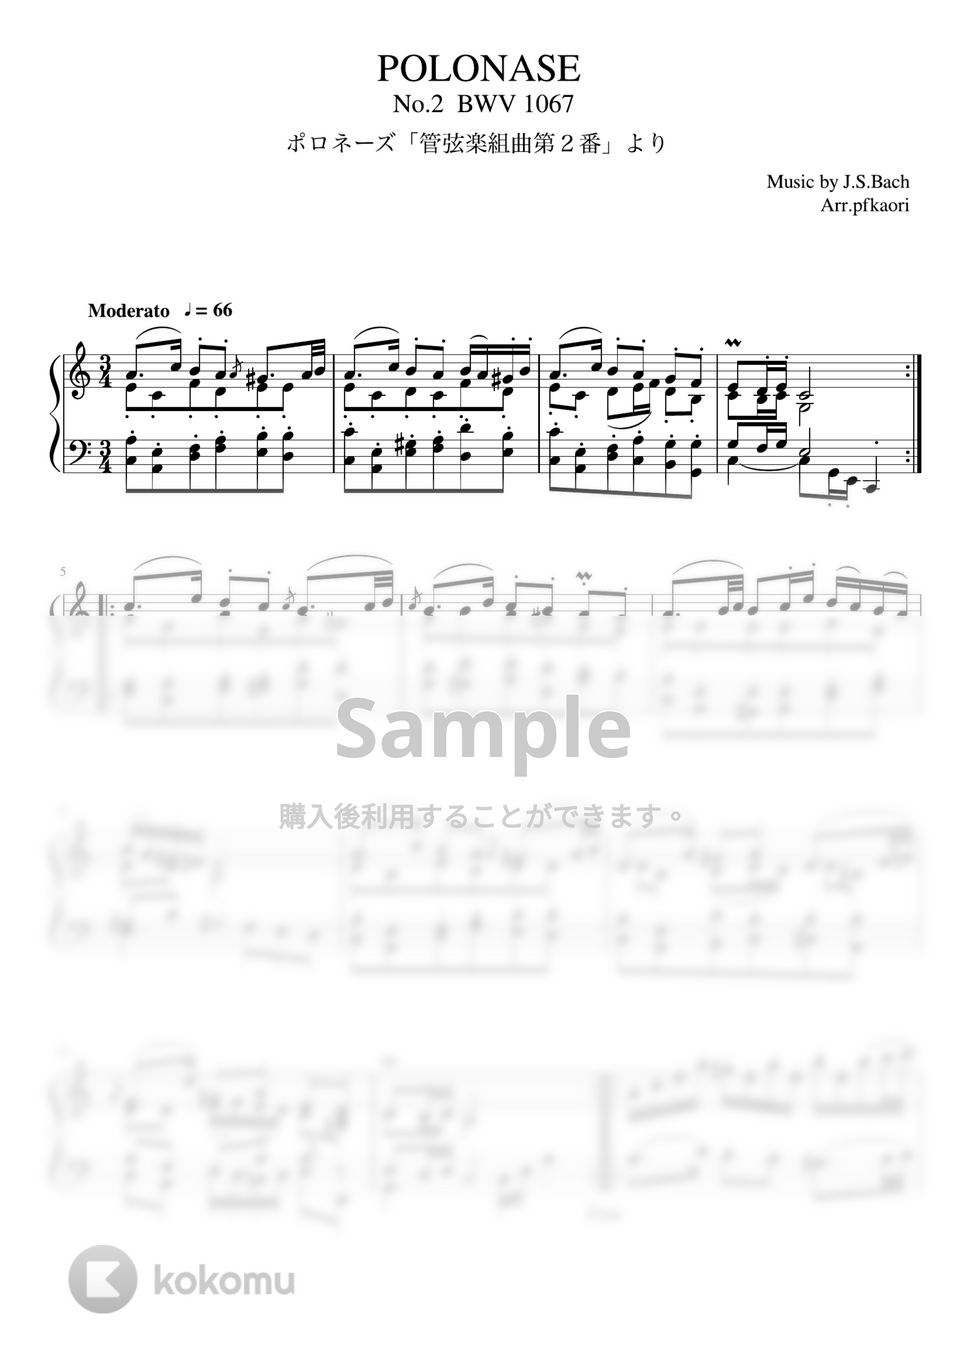 バッハ - 管弦楽第2番「ポロネーズ」 (Am/ピアノソロ中~上級) by pfkaori